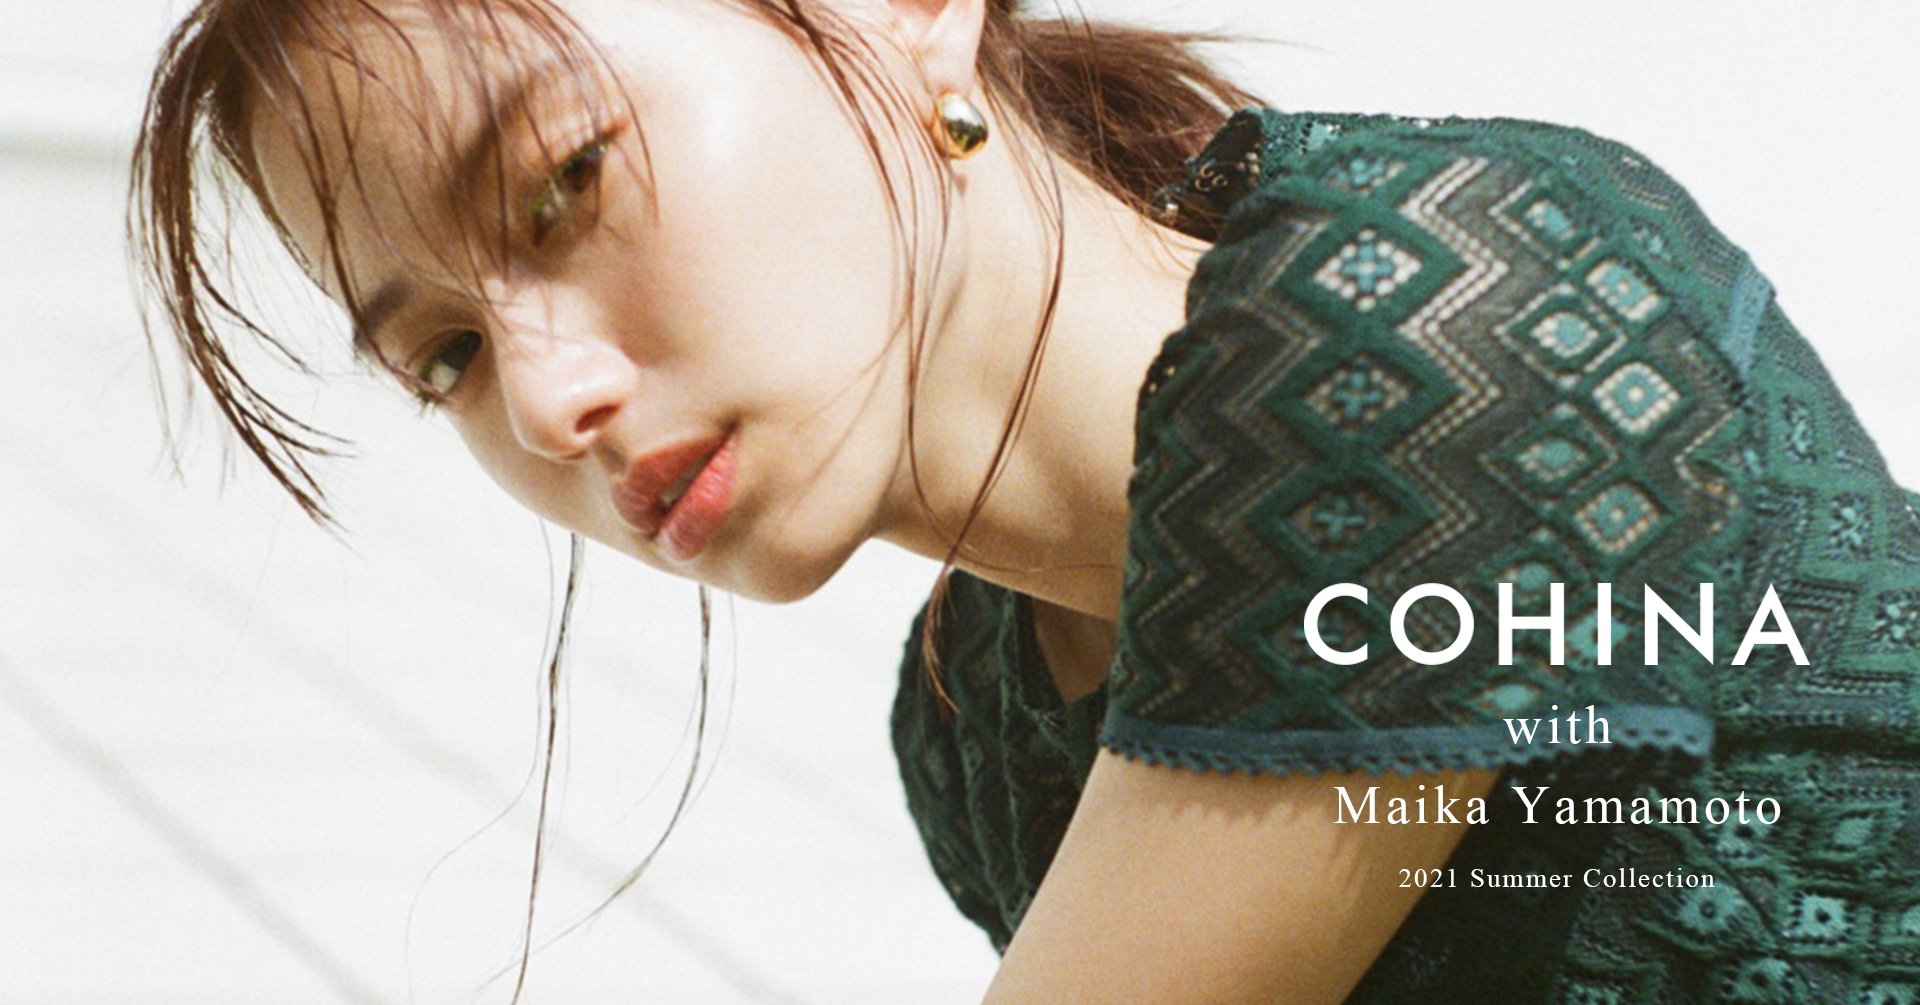 小柄女性向けブランド Cohina が女優の山本舞香を起用した21年夏コレクションルックを公開 株式会社newnのプレスリリース